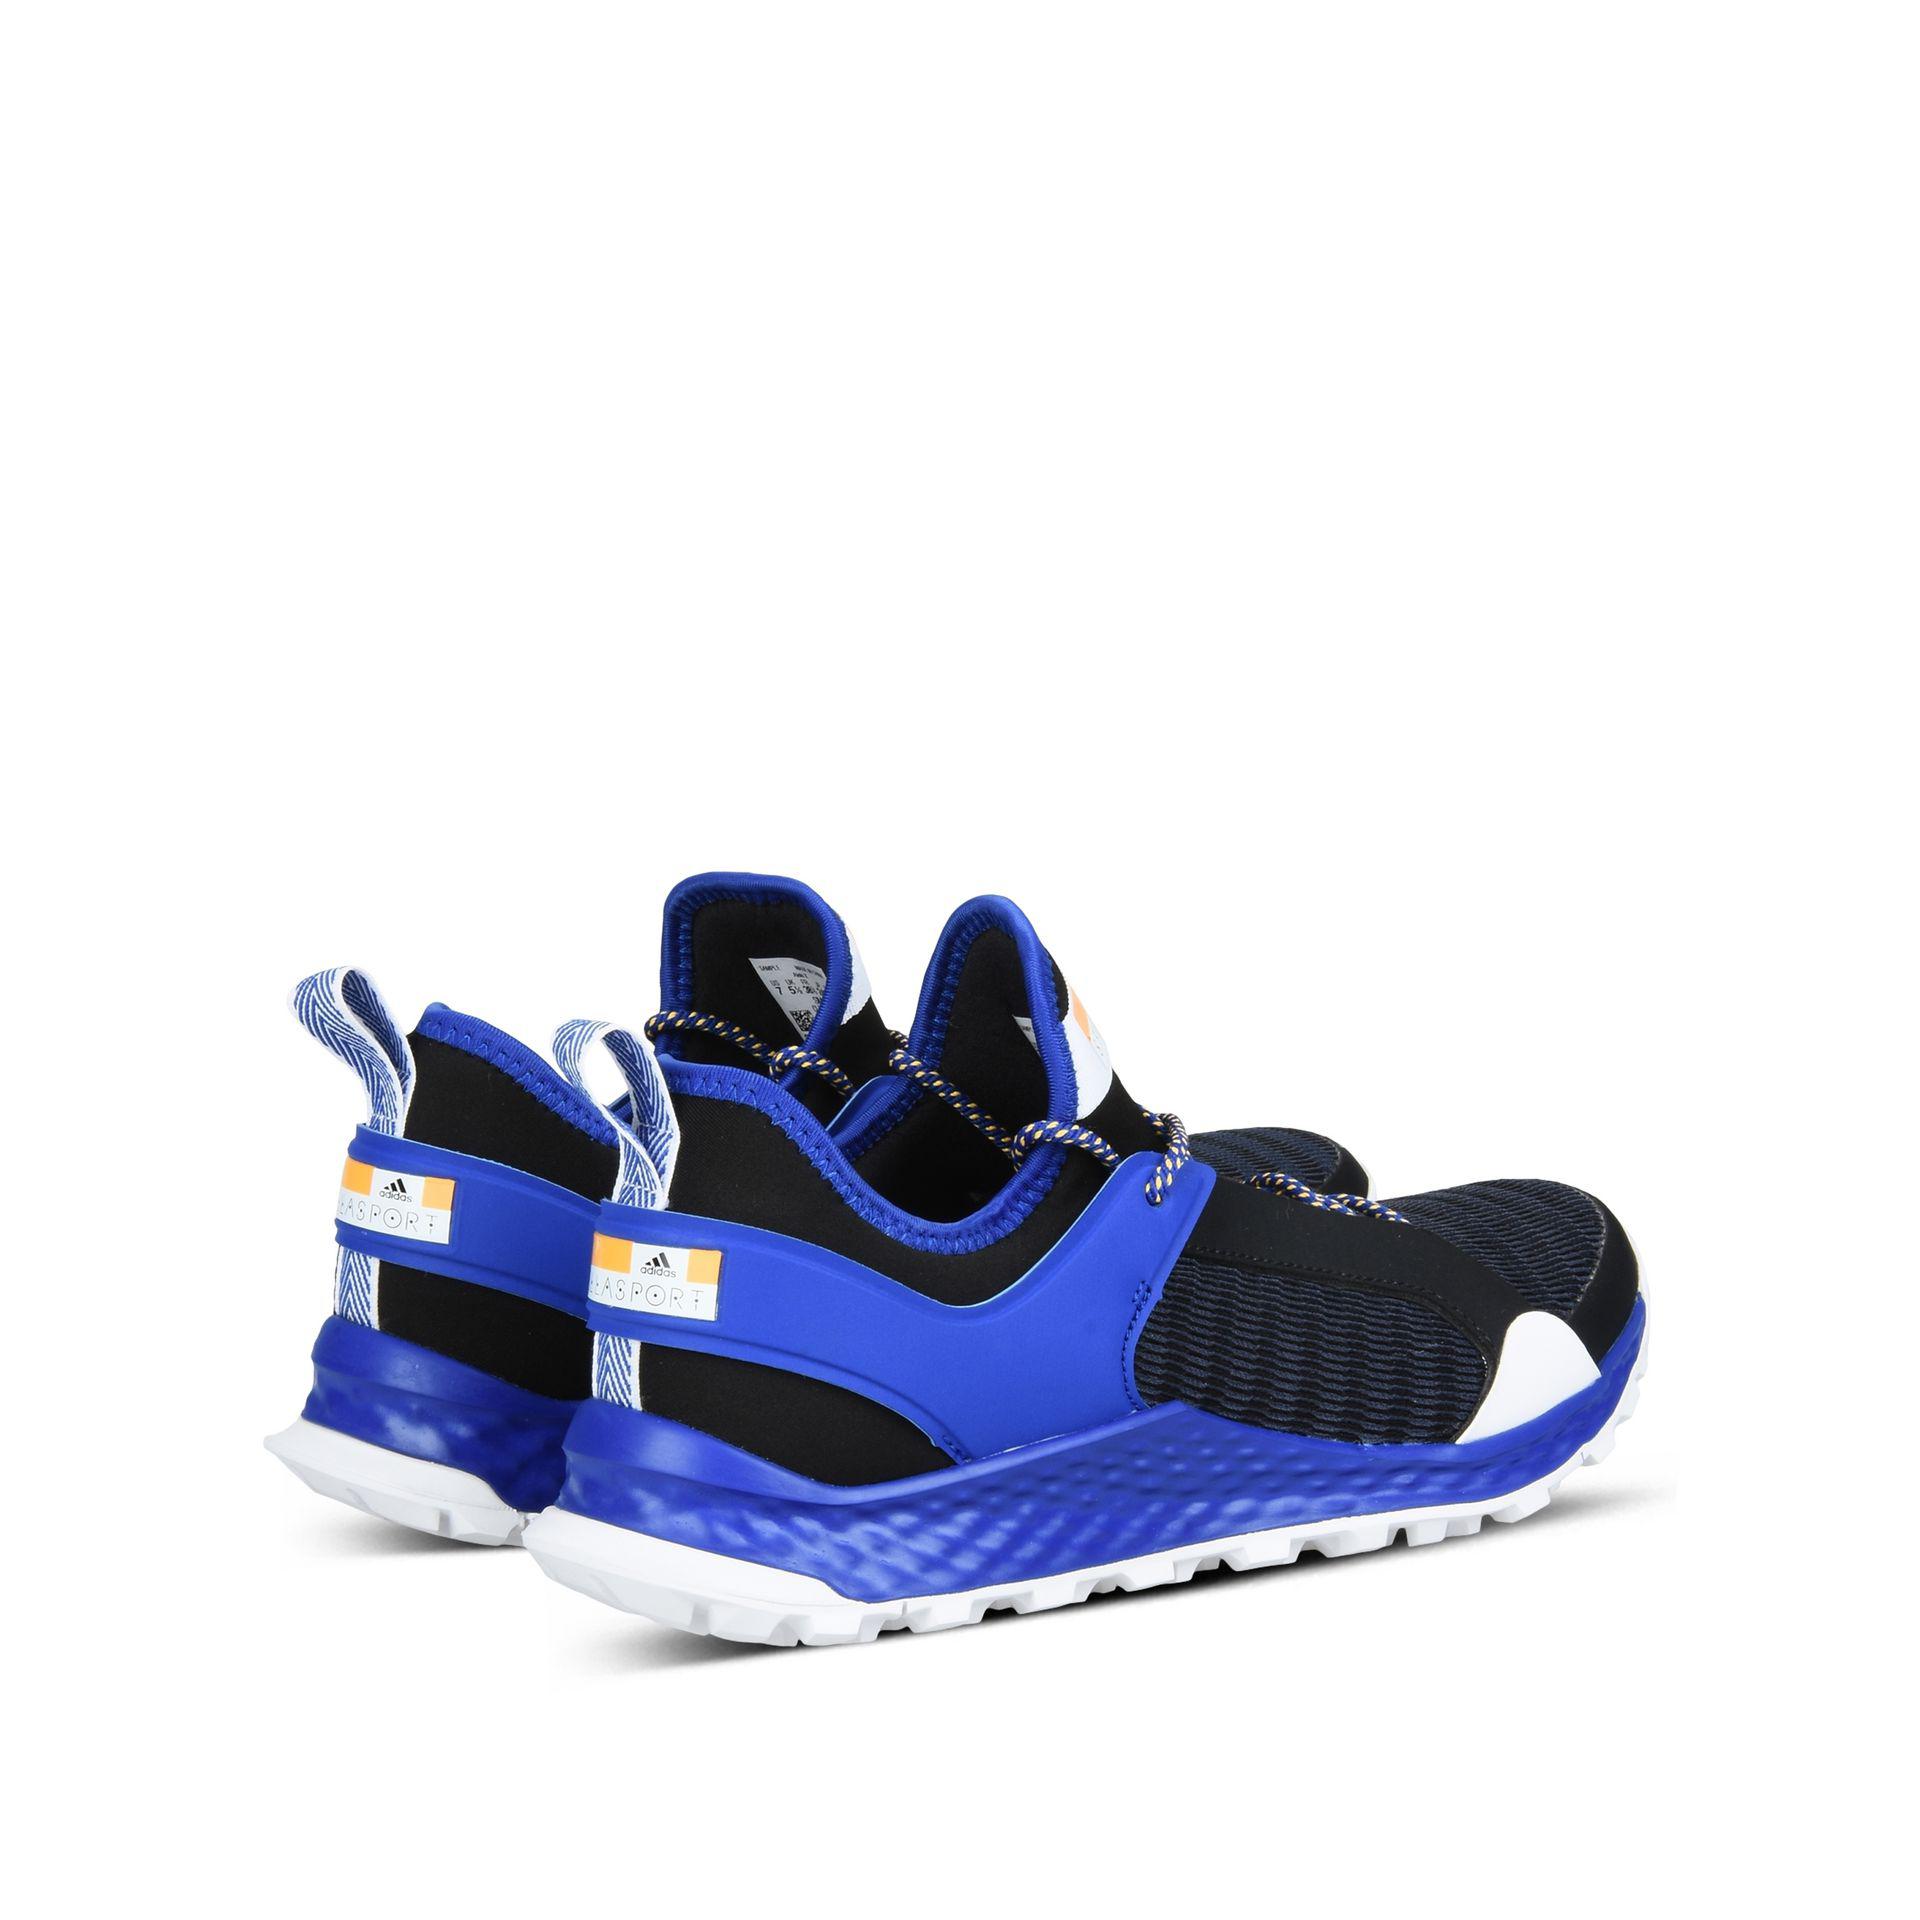 Lyst - Adidas By Stella Mccartney Bold Blue Aleki X Running Shoes in ...